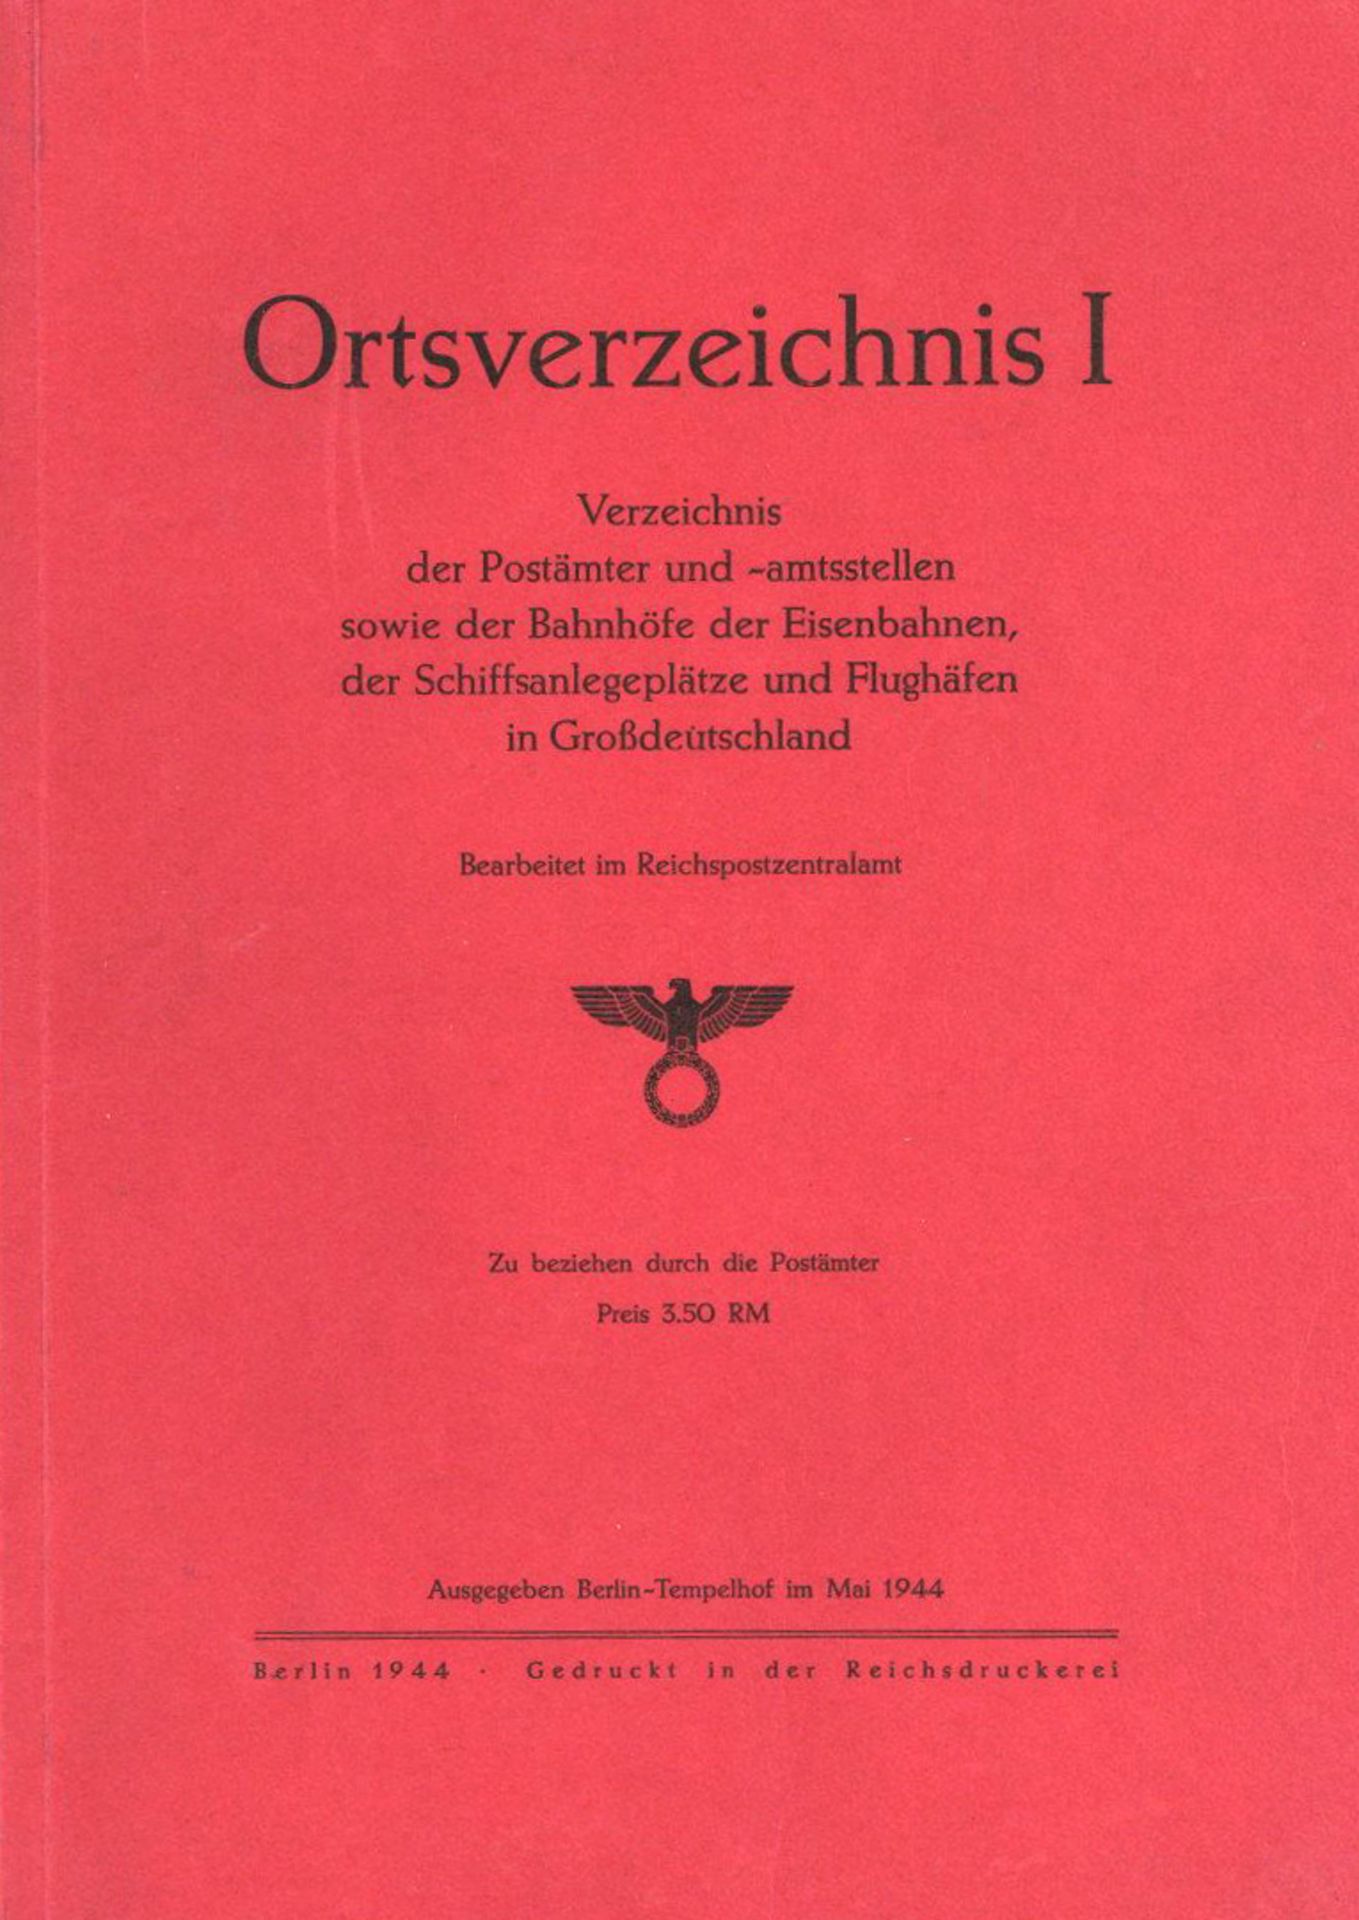 Buch WK II Oertsverzeichnis I der Postämter, Bahnhöfe, Schiffanlegestellen und Flughäfen in